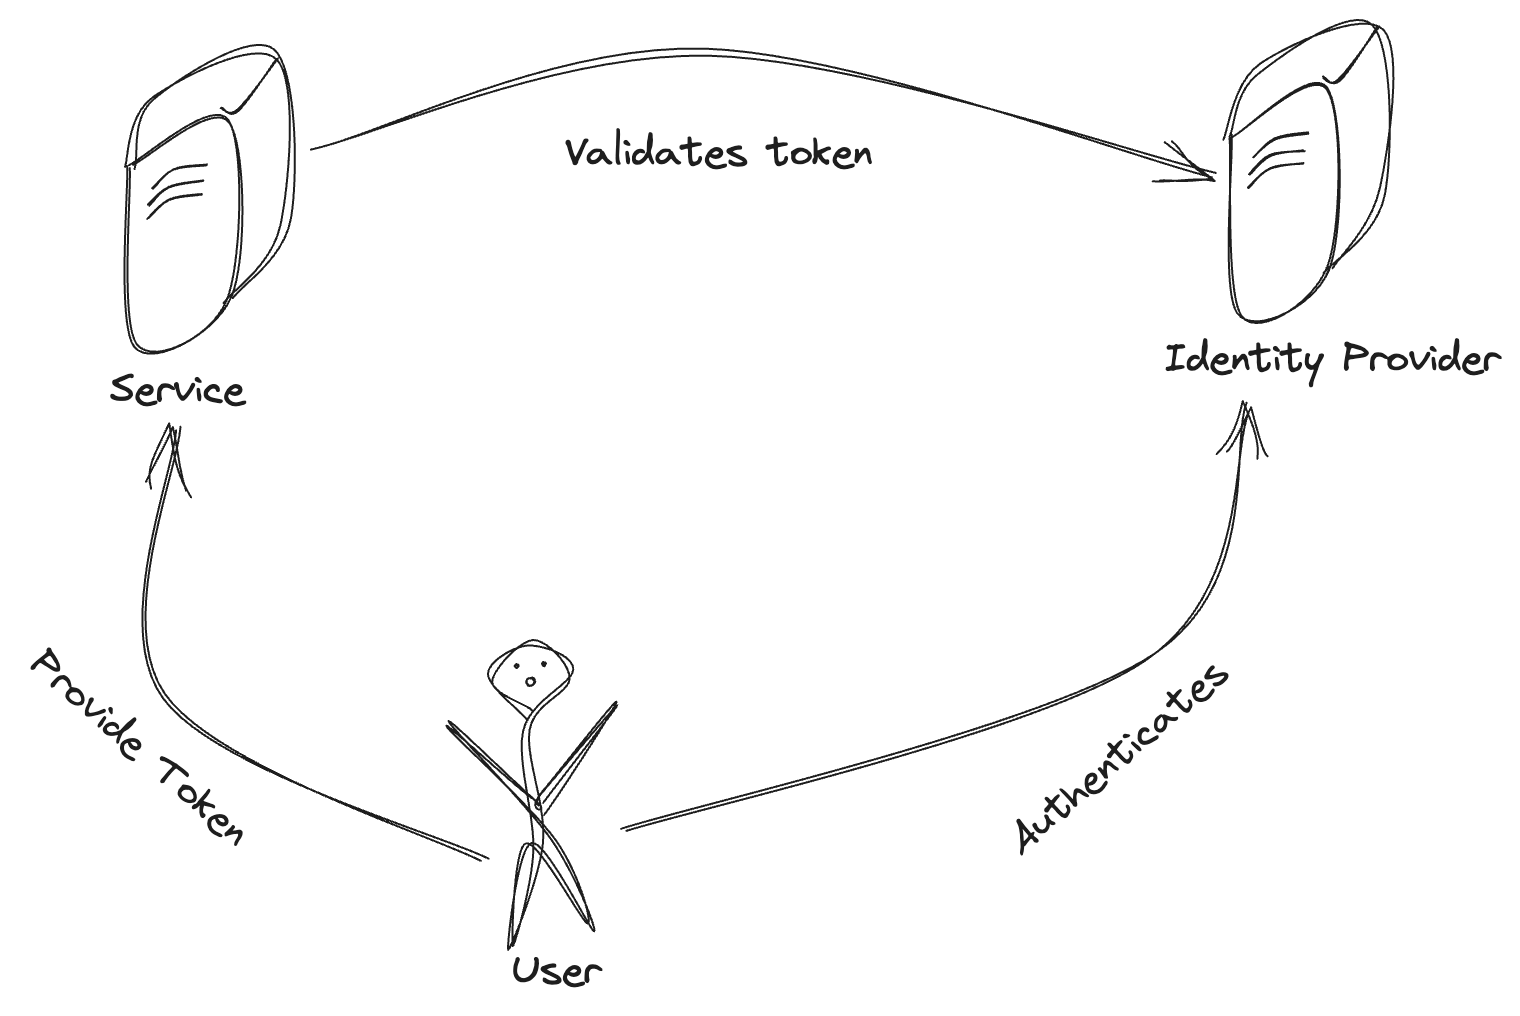 Diagram 2